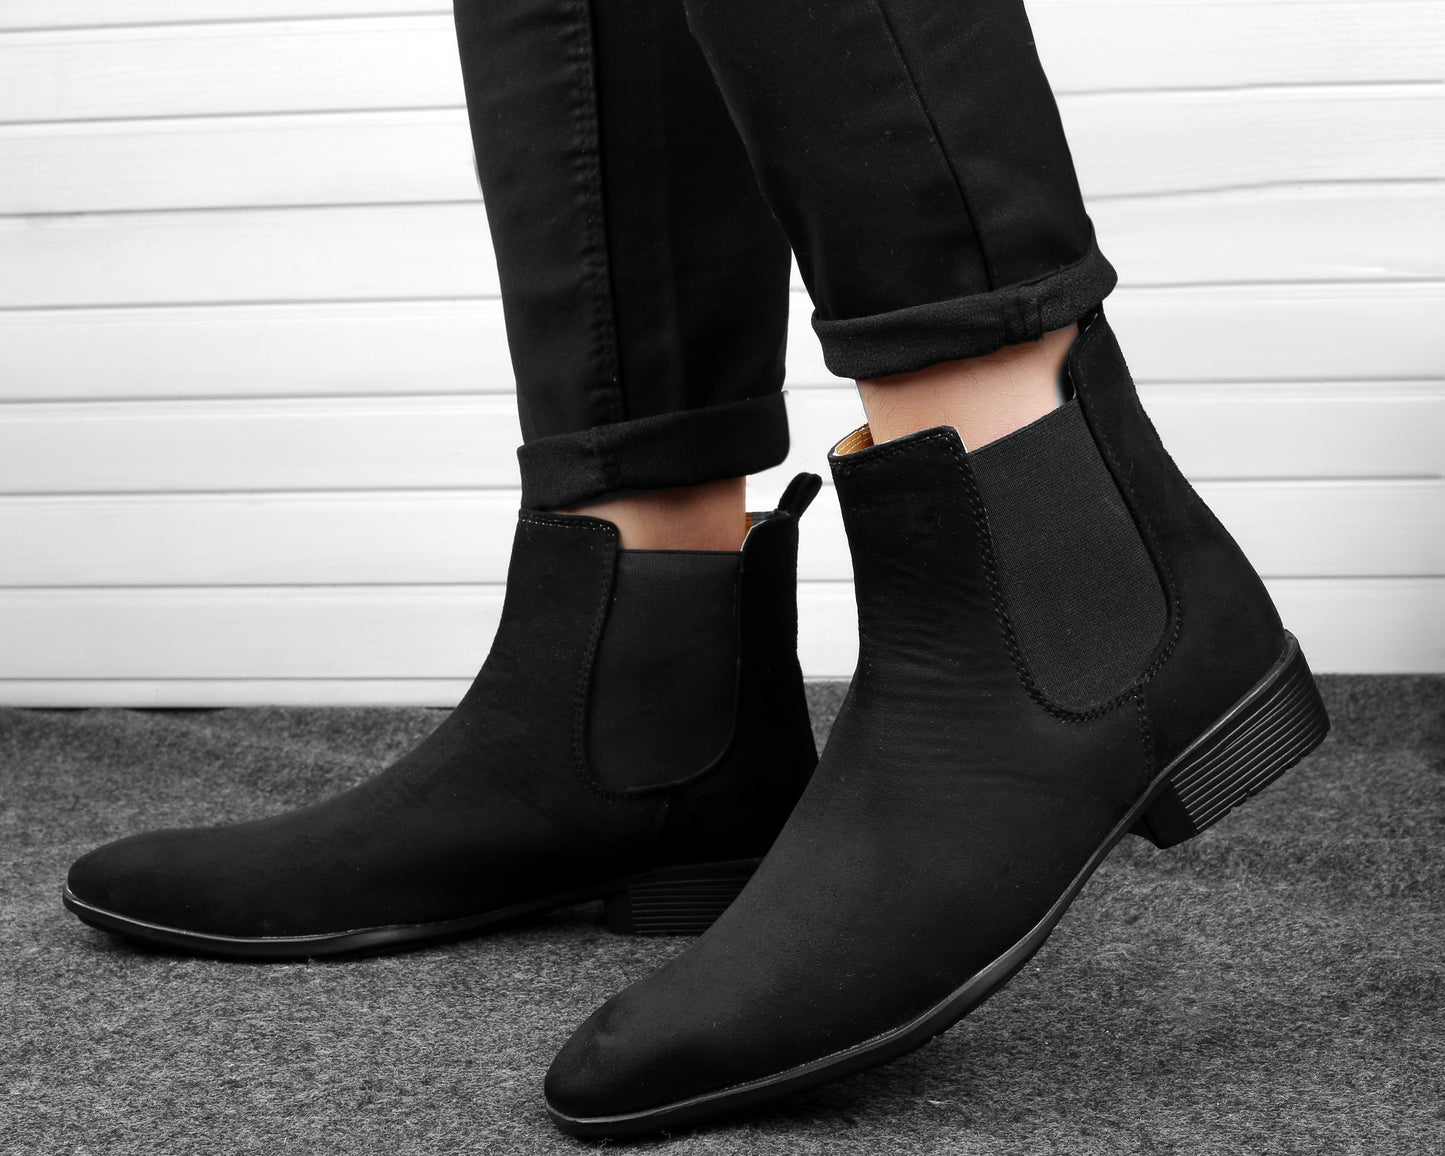 Bxxy's Trendiest Chelsea Boots for Men